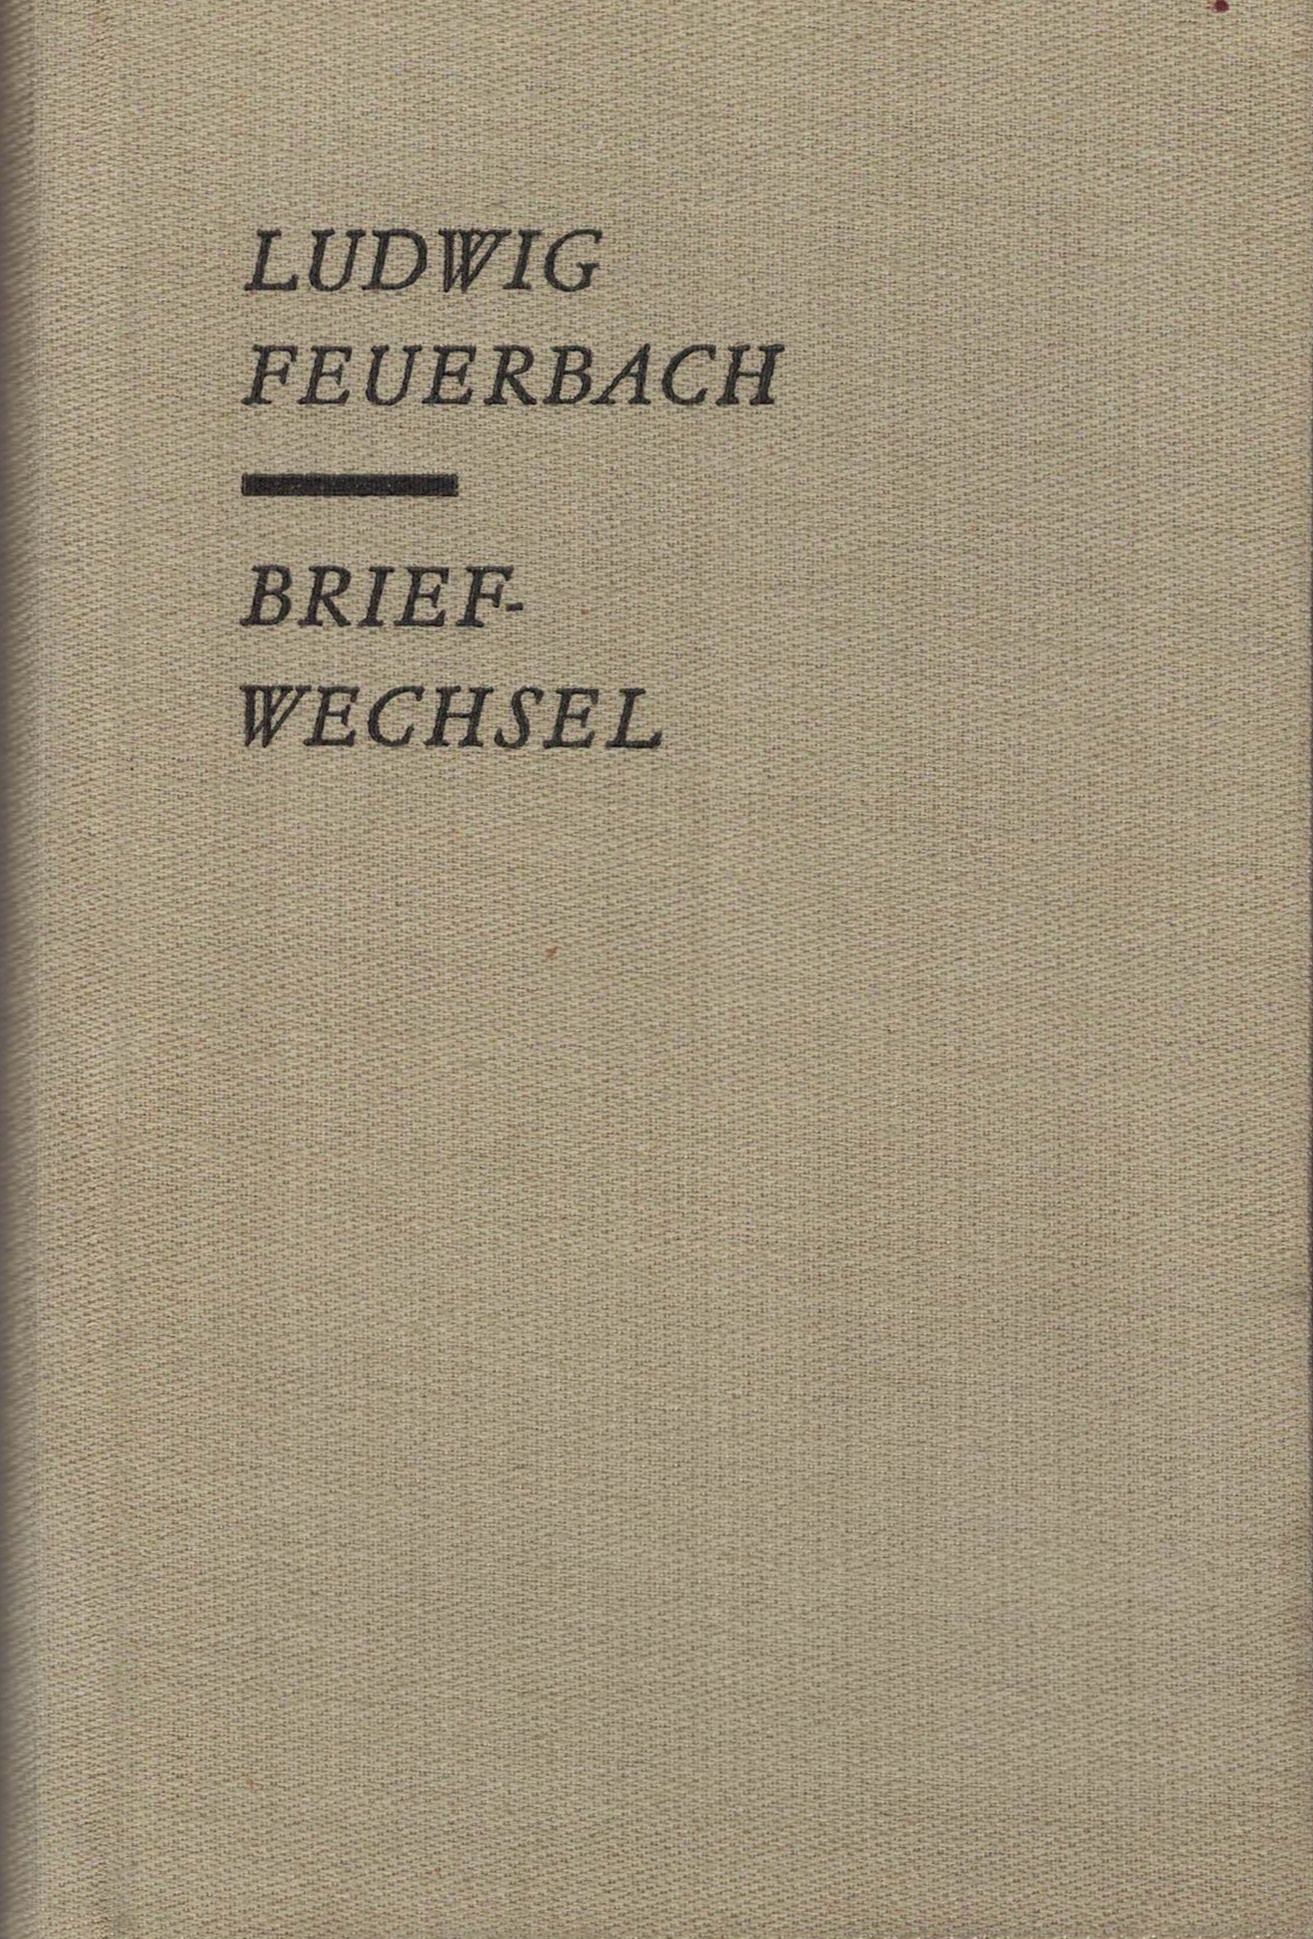 Ludwig Feuerbach - Briefwechsel